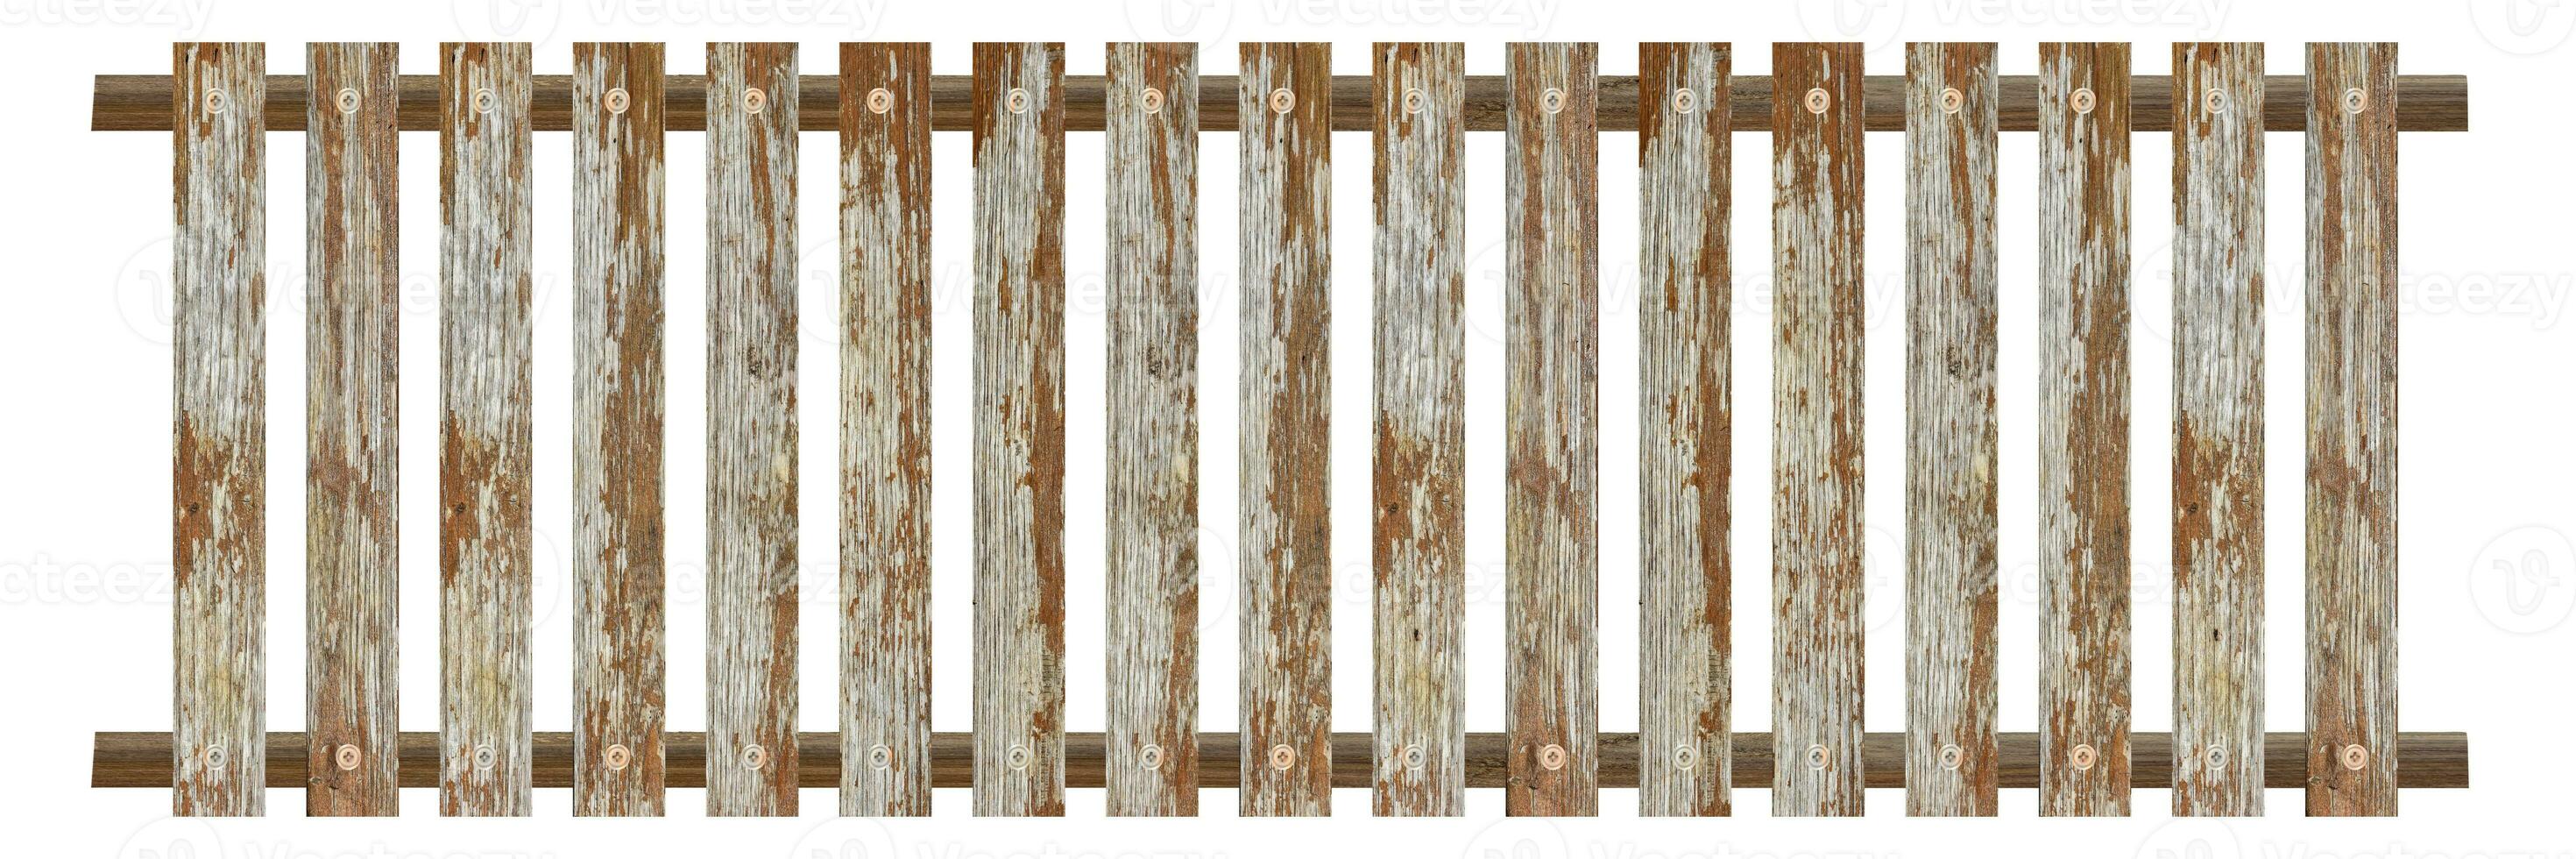 staccionata in legno isolato su sfondo bianco. oggetto con tracciato di ritaglio. foto